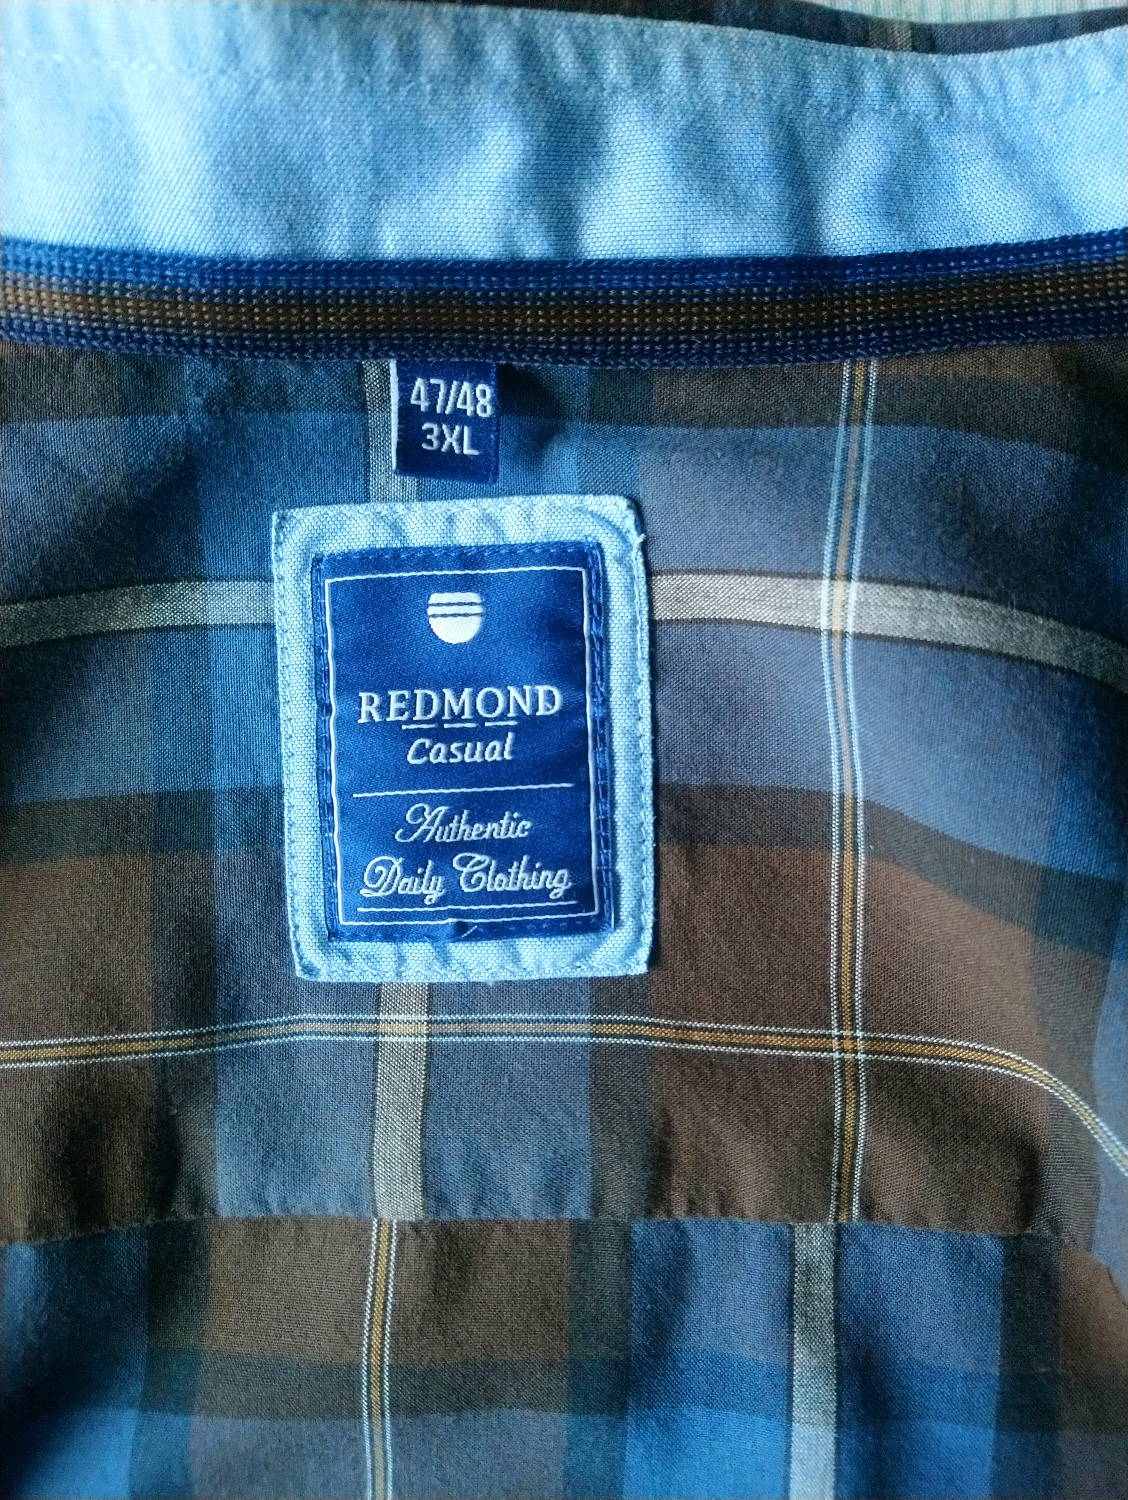 Camicia di Redmond. Brown Brown controllato. Dimensione 3XL / XXXL.